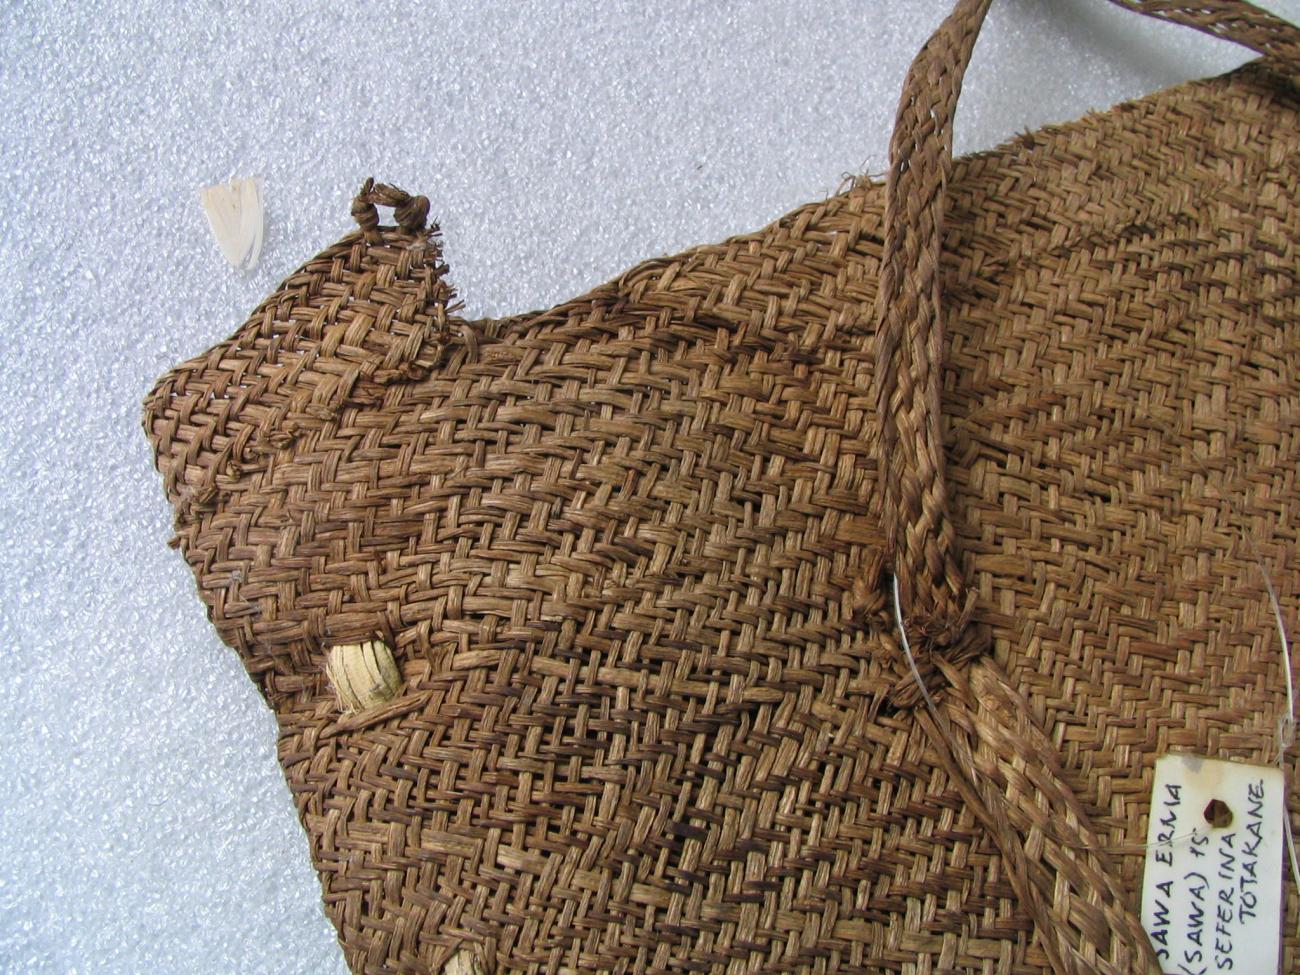 EA/199/1 - 
ornamental bag
